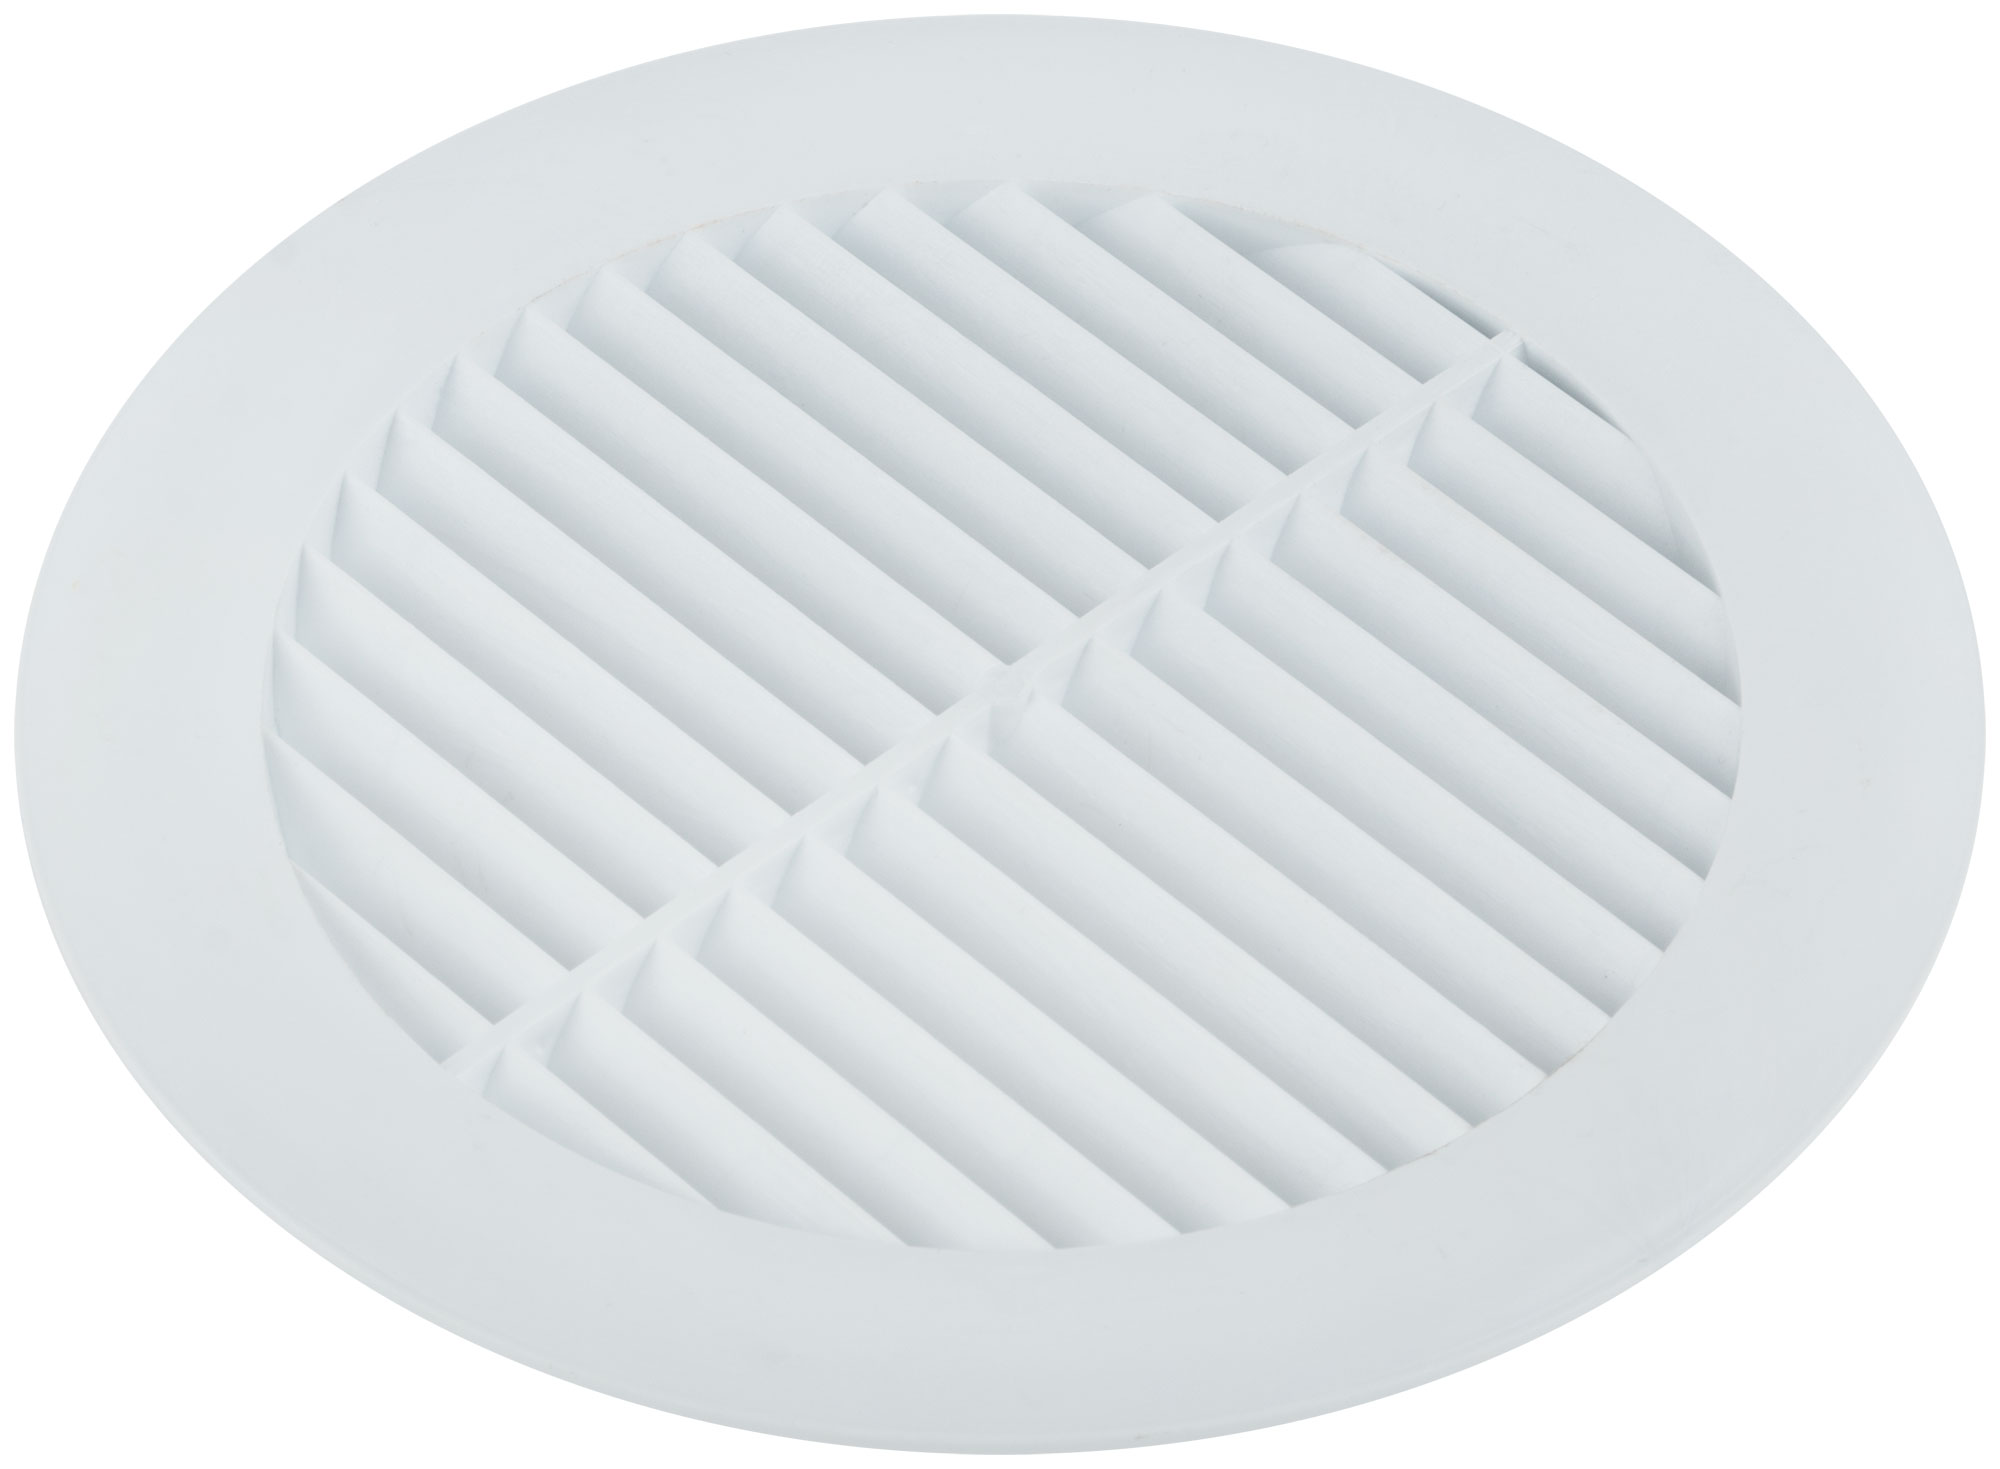 Вентиляционная решетка, пластиковая, круглая, 160 мм, без сетки, белая